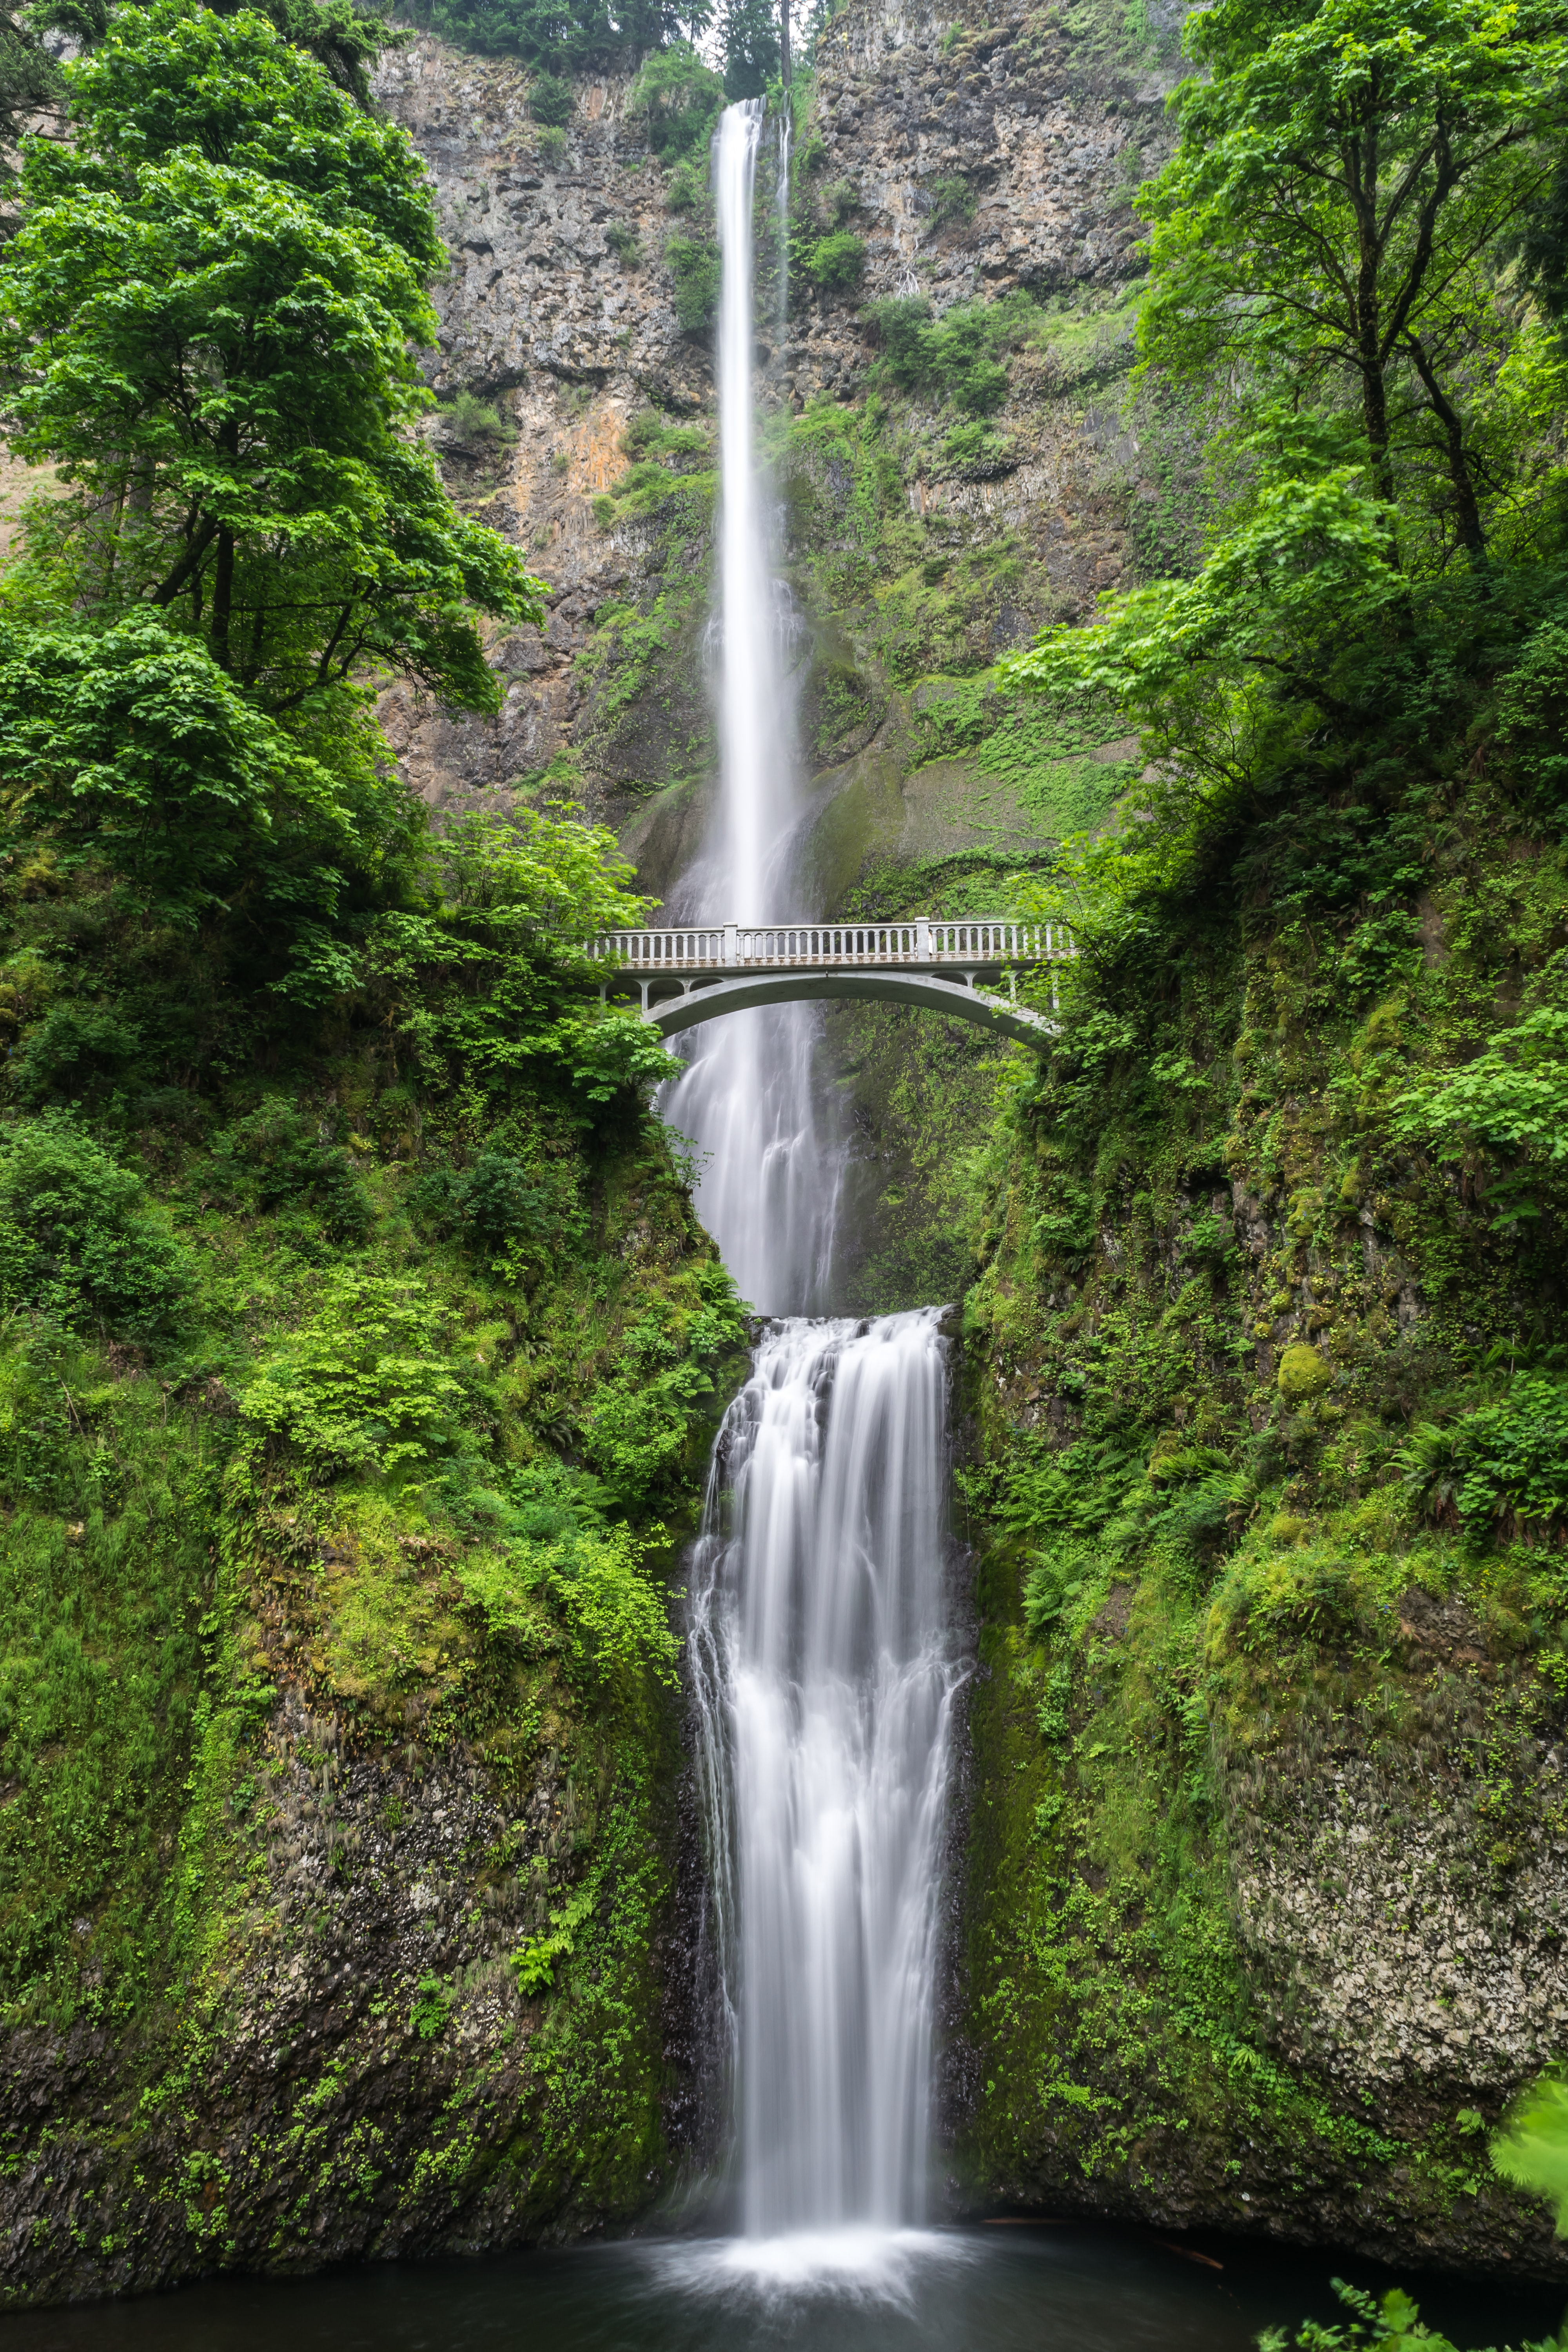 Бесплатное фото Картинка с высоким водопадом в ущелье